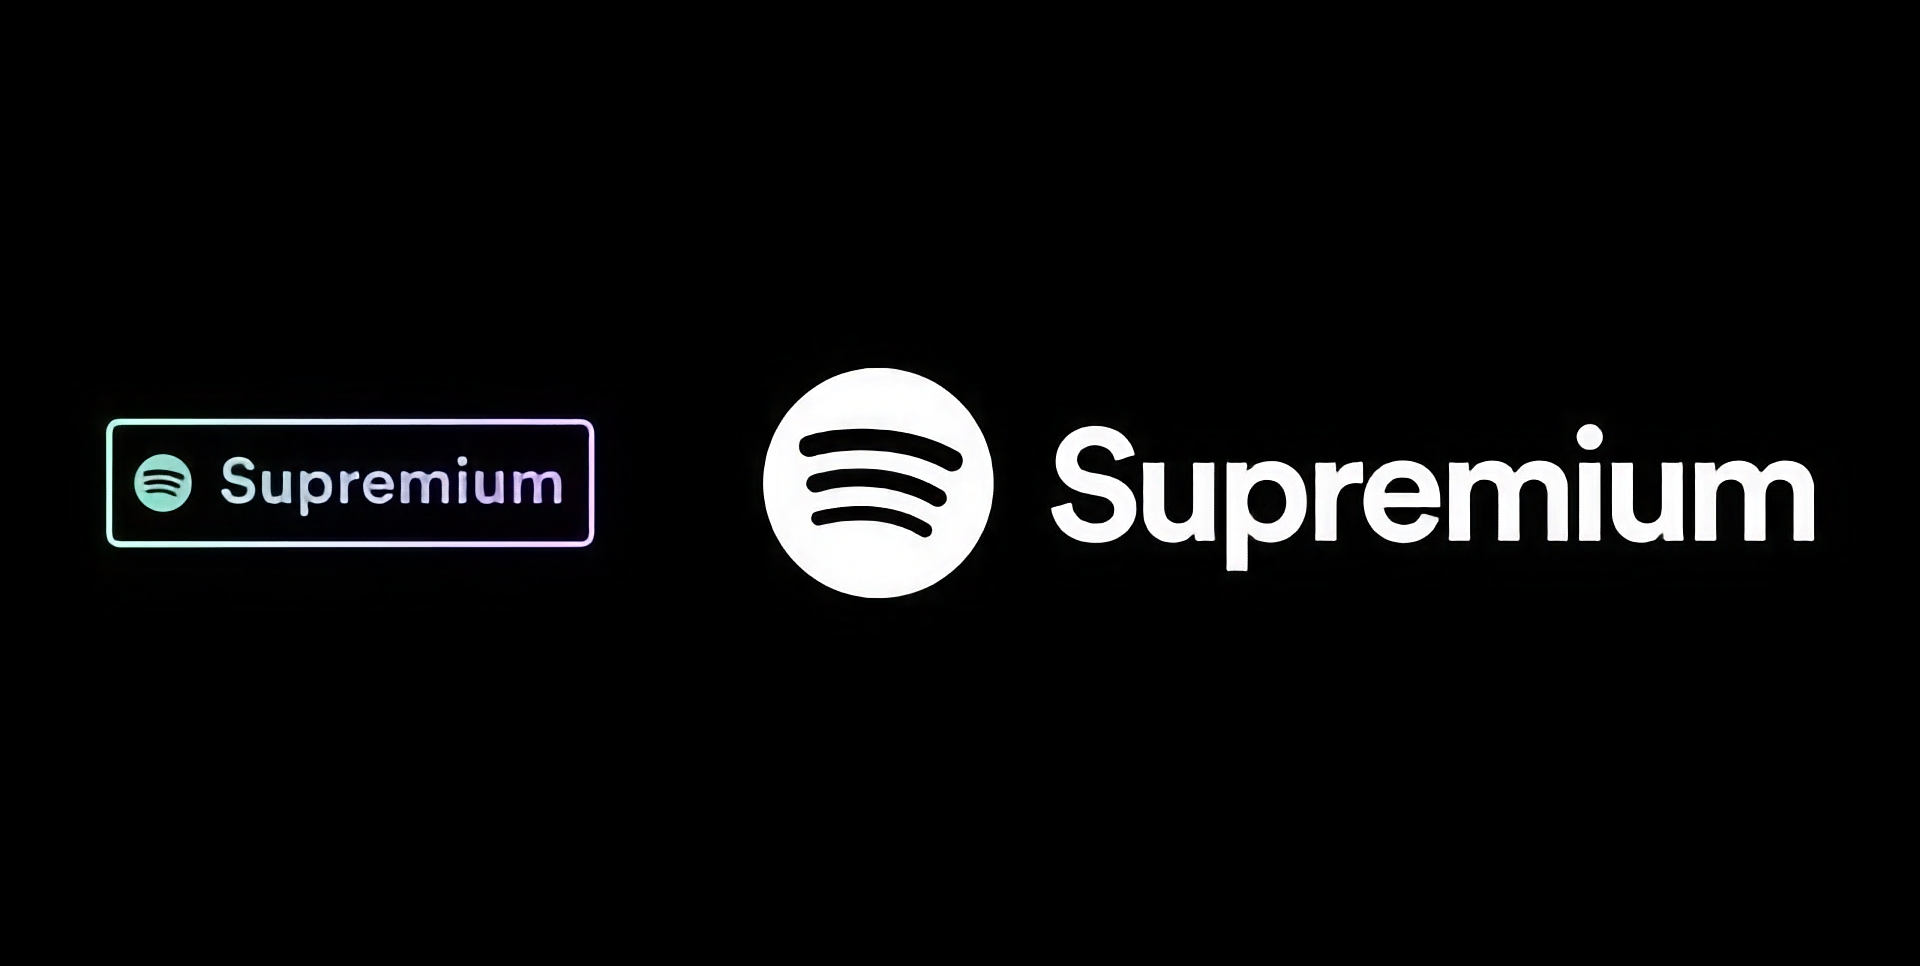 Spotify bereitet die Veröffentlichung eines Supremium-Tarifs mit Lossless-Audio-Unterstützung und einem Preis von 19 Dollar pro Monat vor